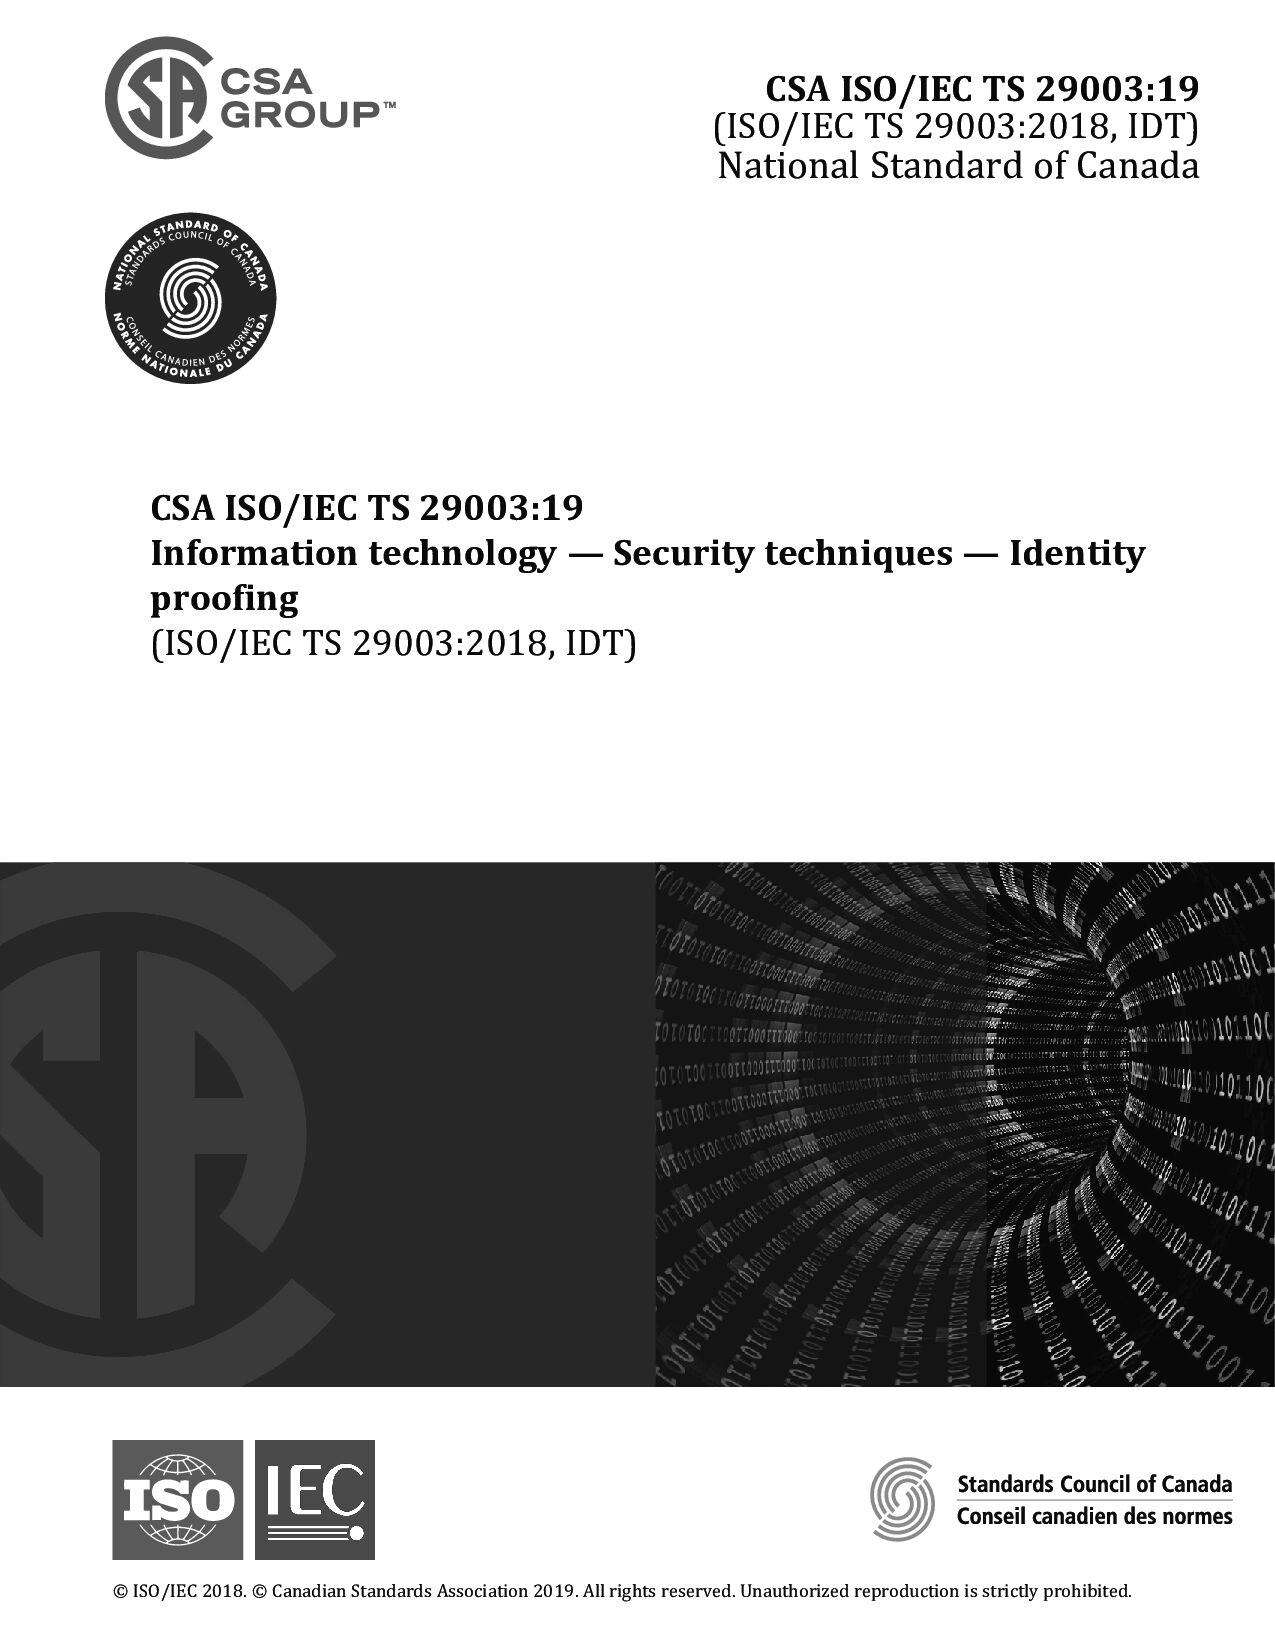 CSA ISO/IEC TS 29003:2019封面图